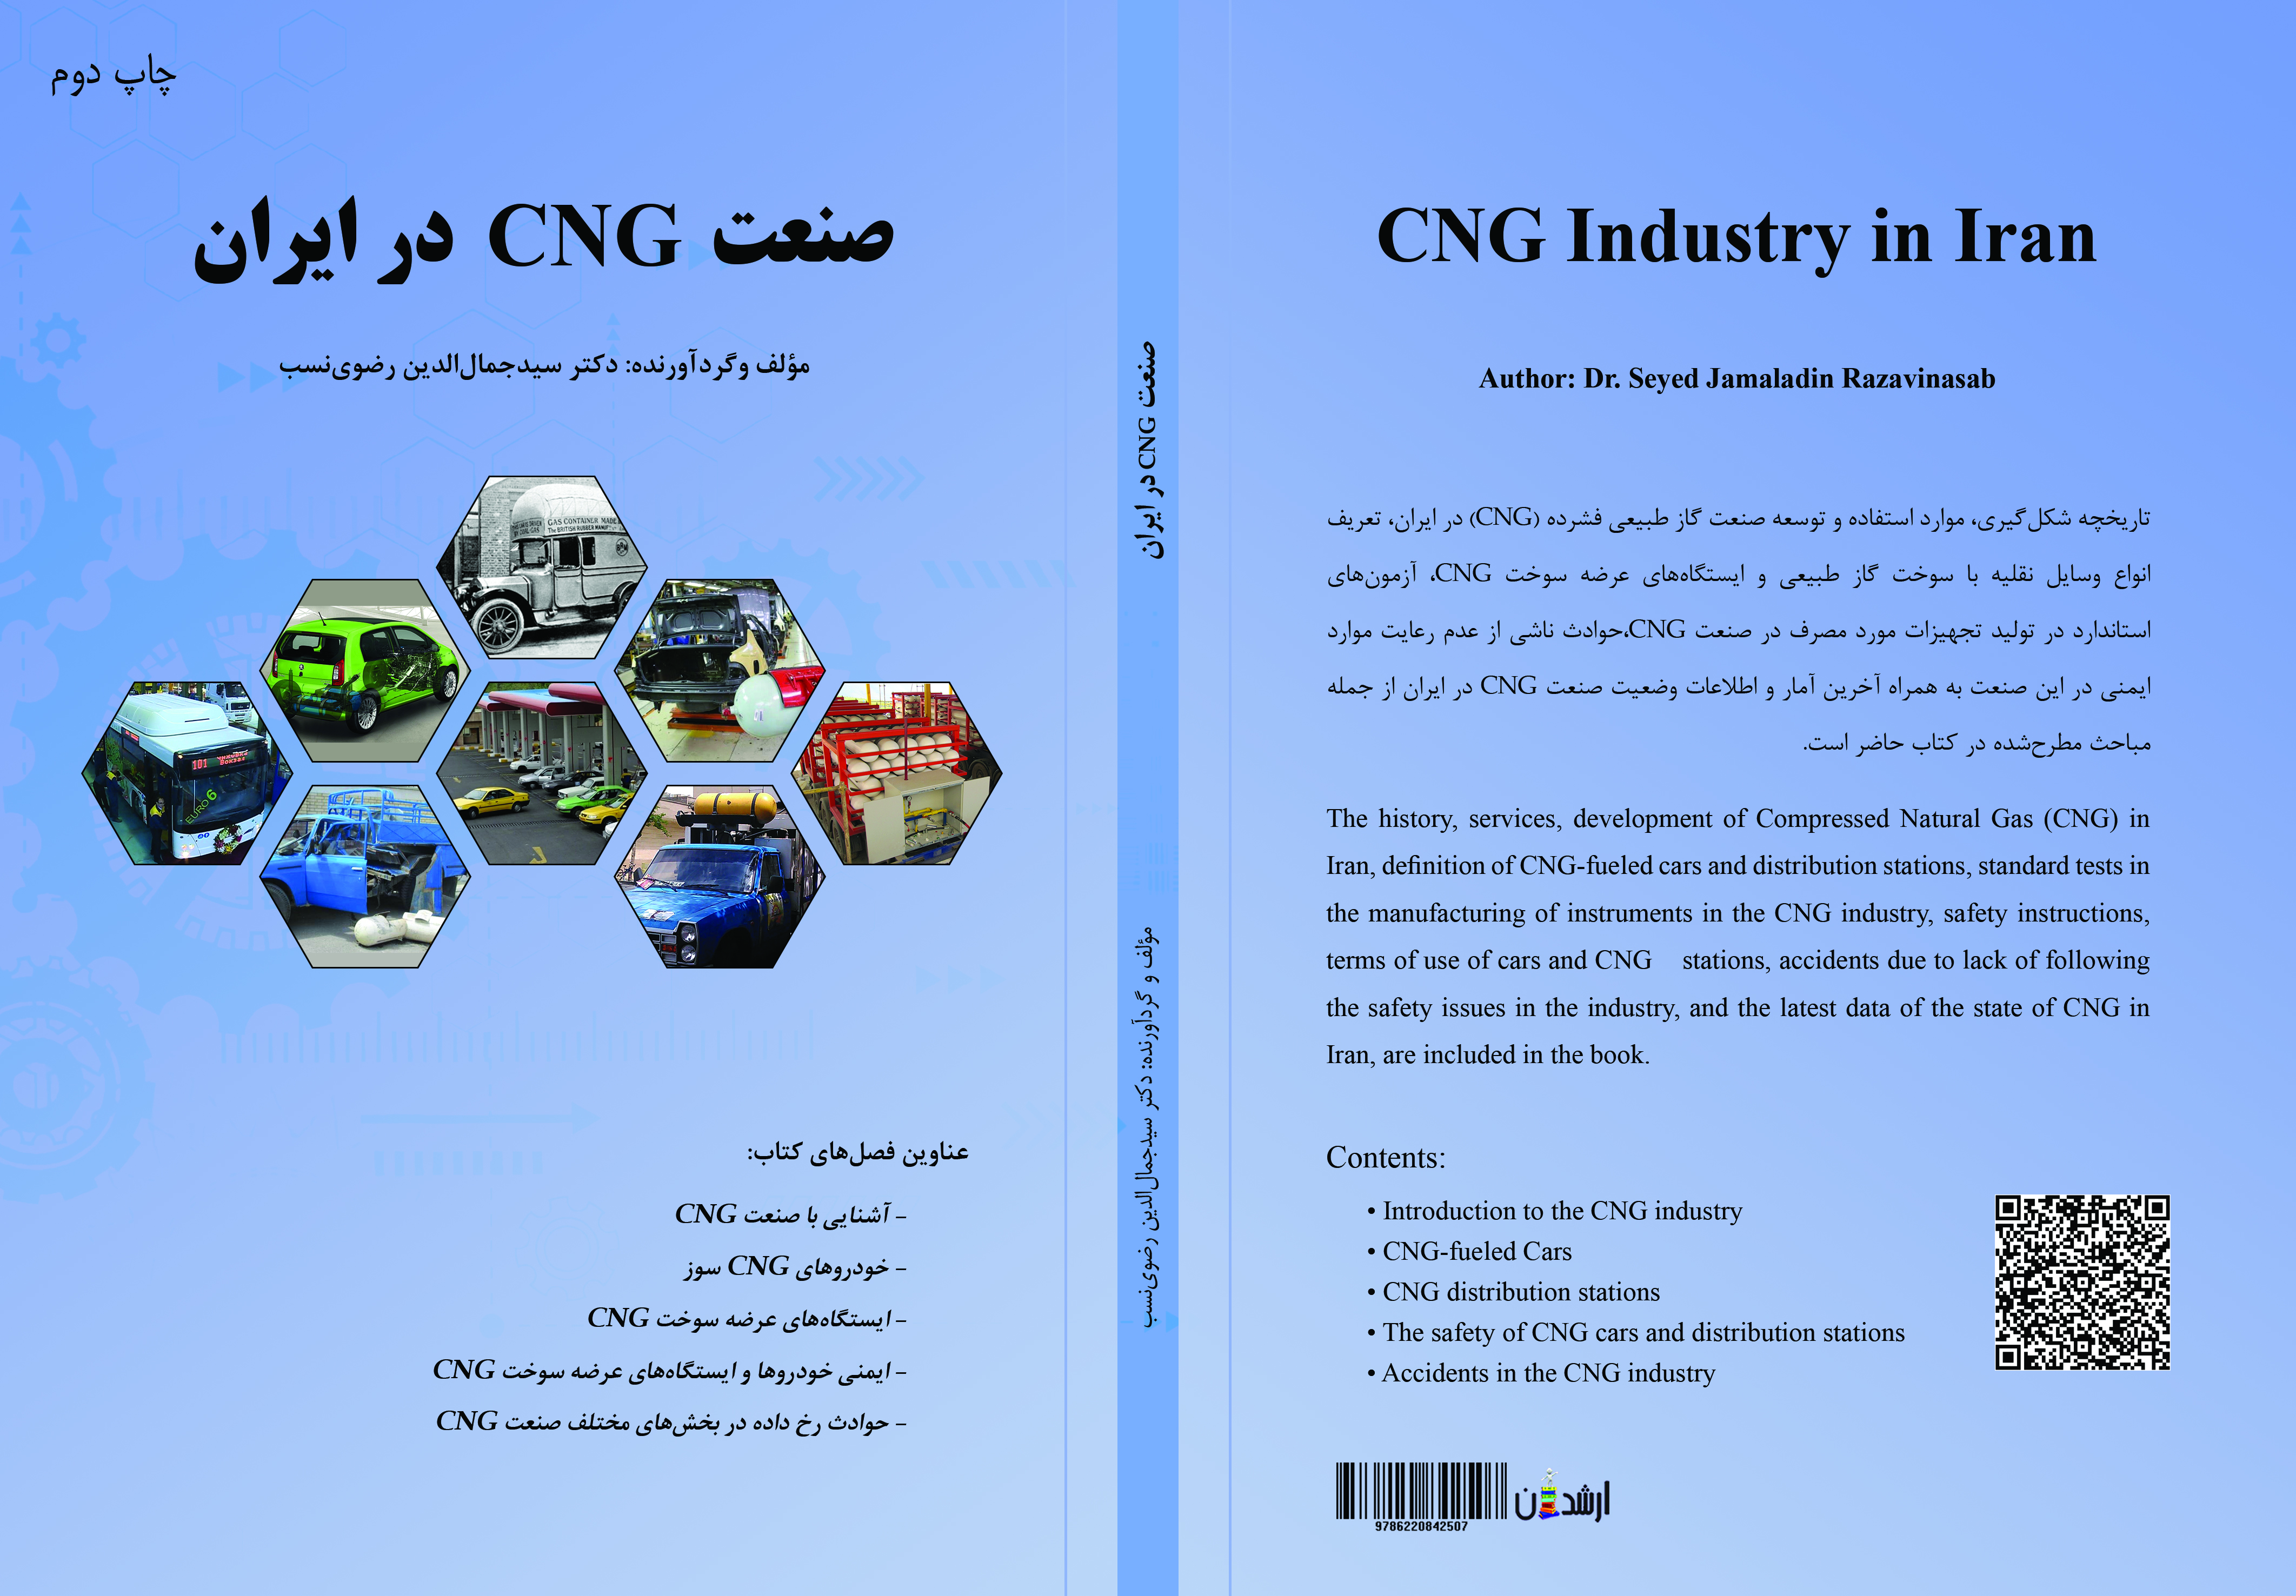 صنعت CNG در ایران